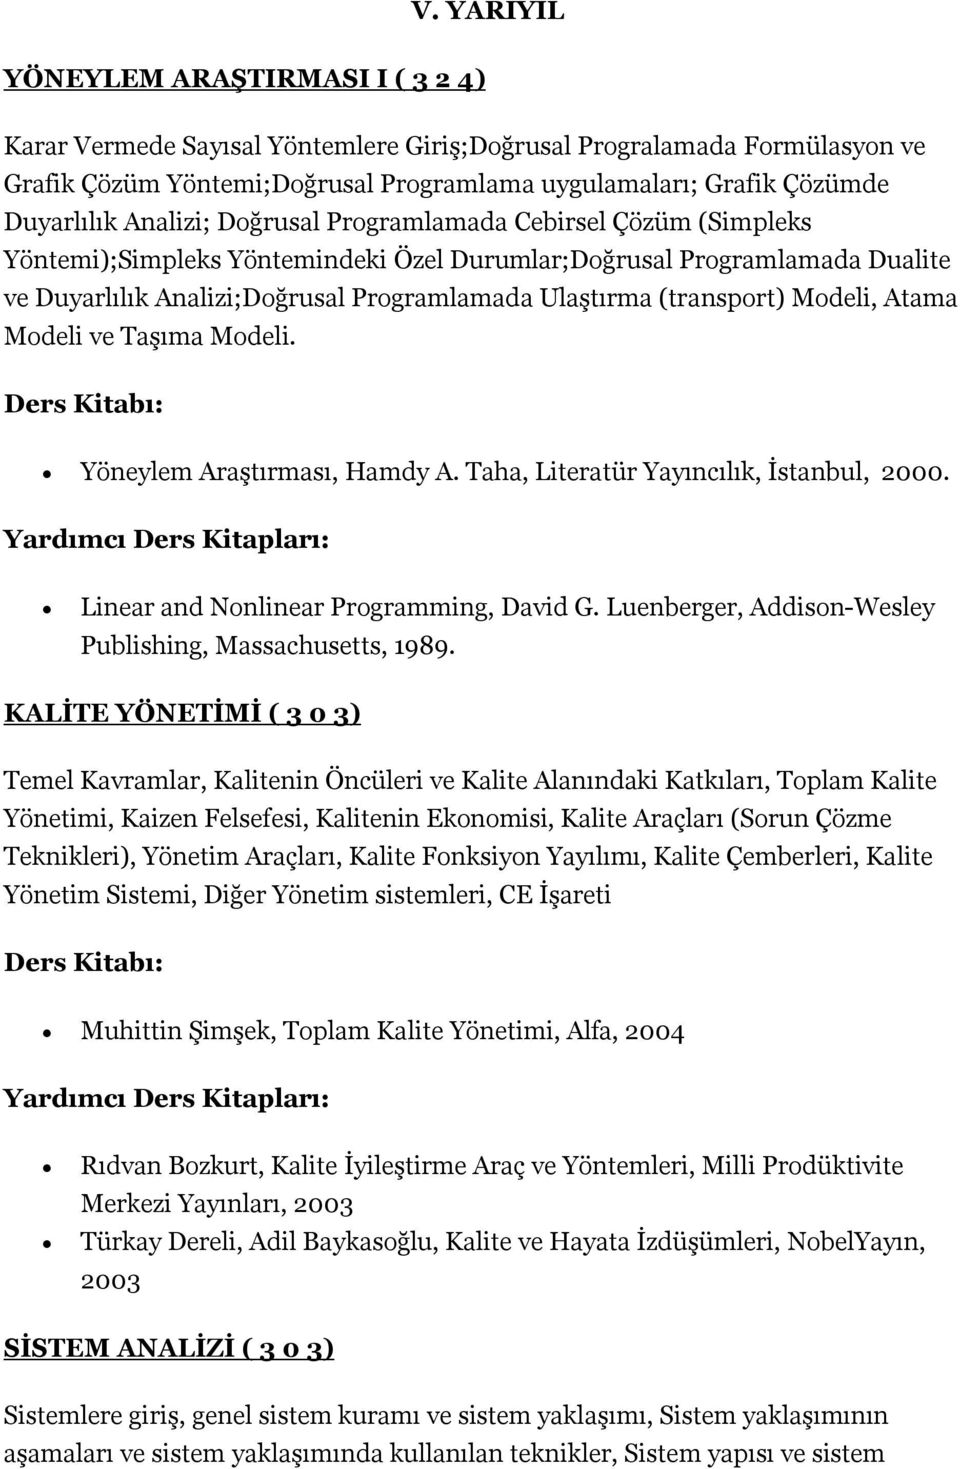 (transport) Modeli, Atama Modeli ve Taşıma Modeli. Yöneylem Araştırması, Hamdy A. Taha, Literatür Yayıncılık, İstanbul, 2000. Linear and Nonlinear Programming, David G.